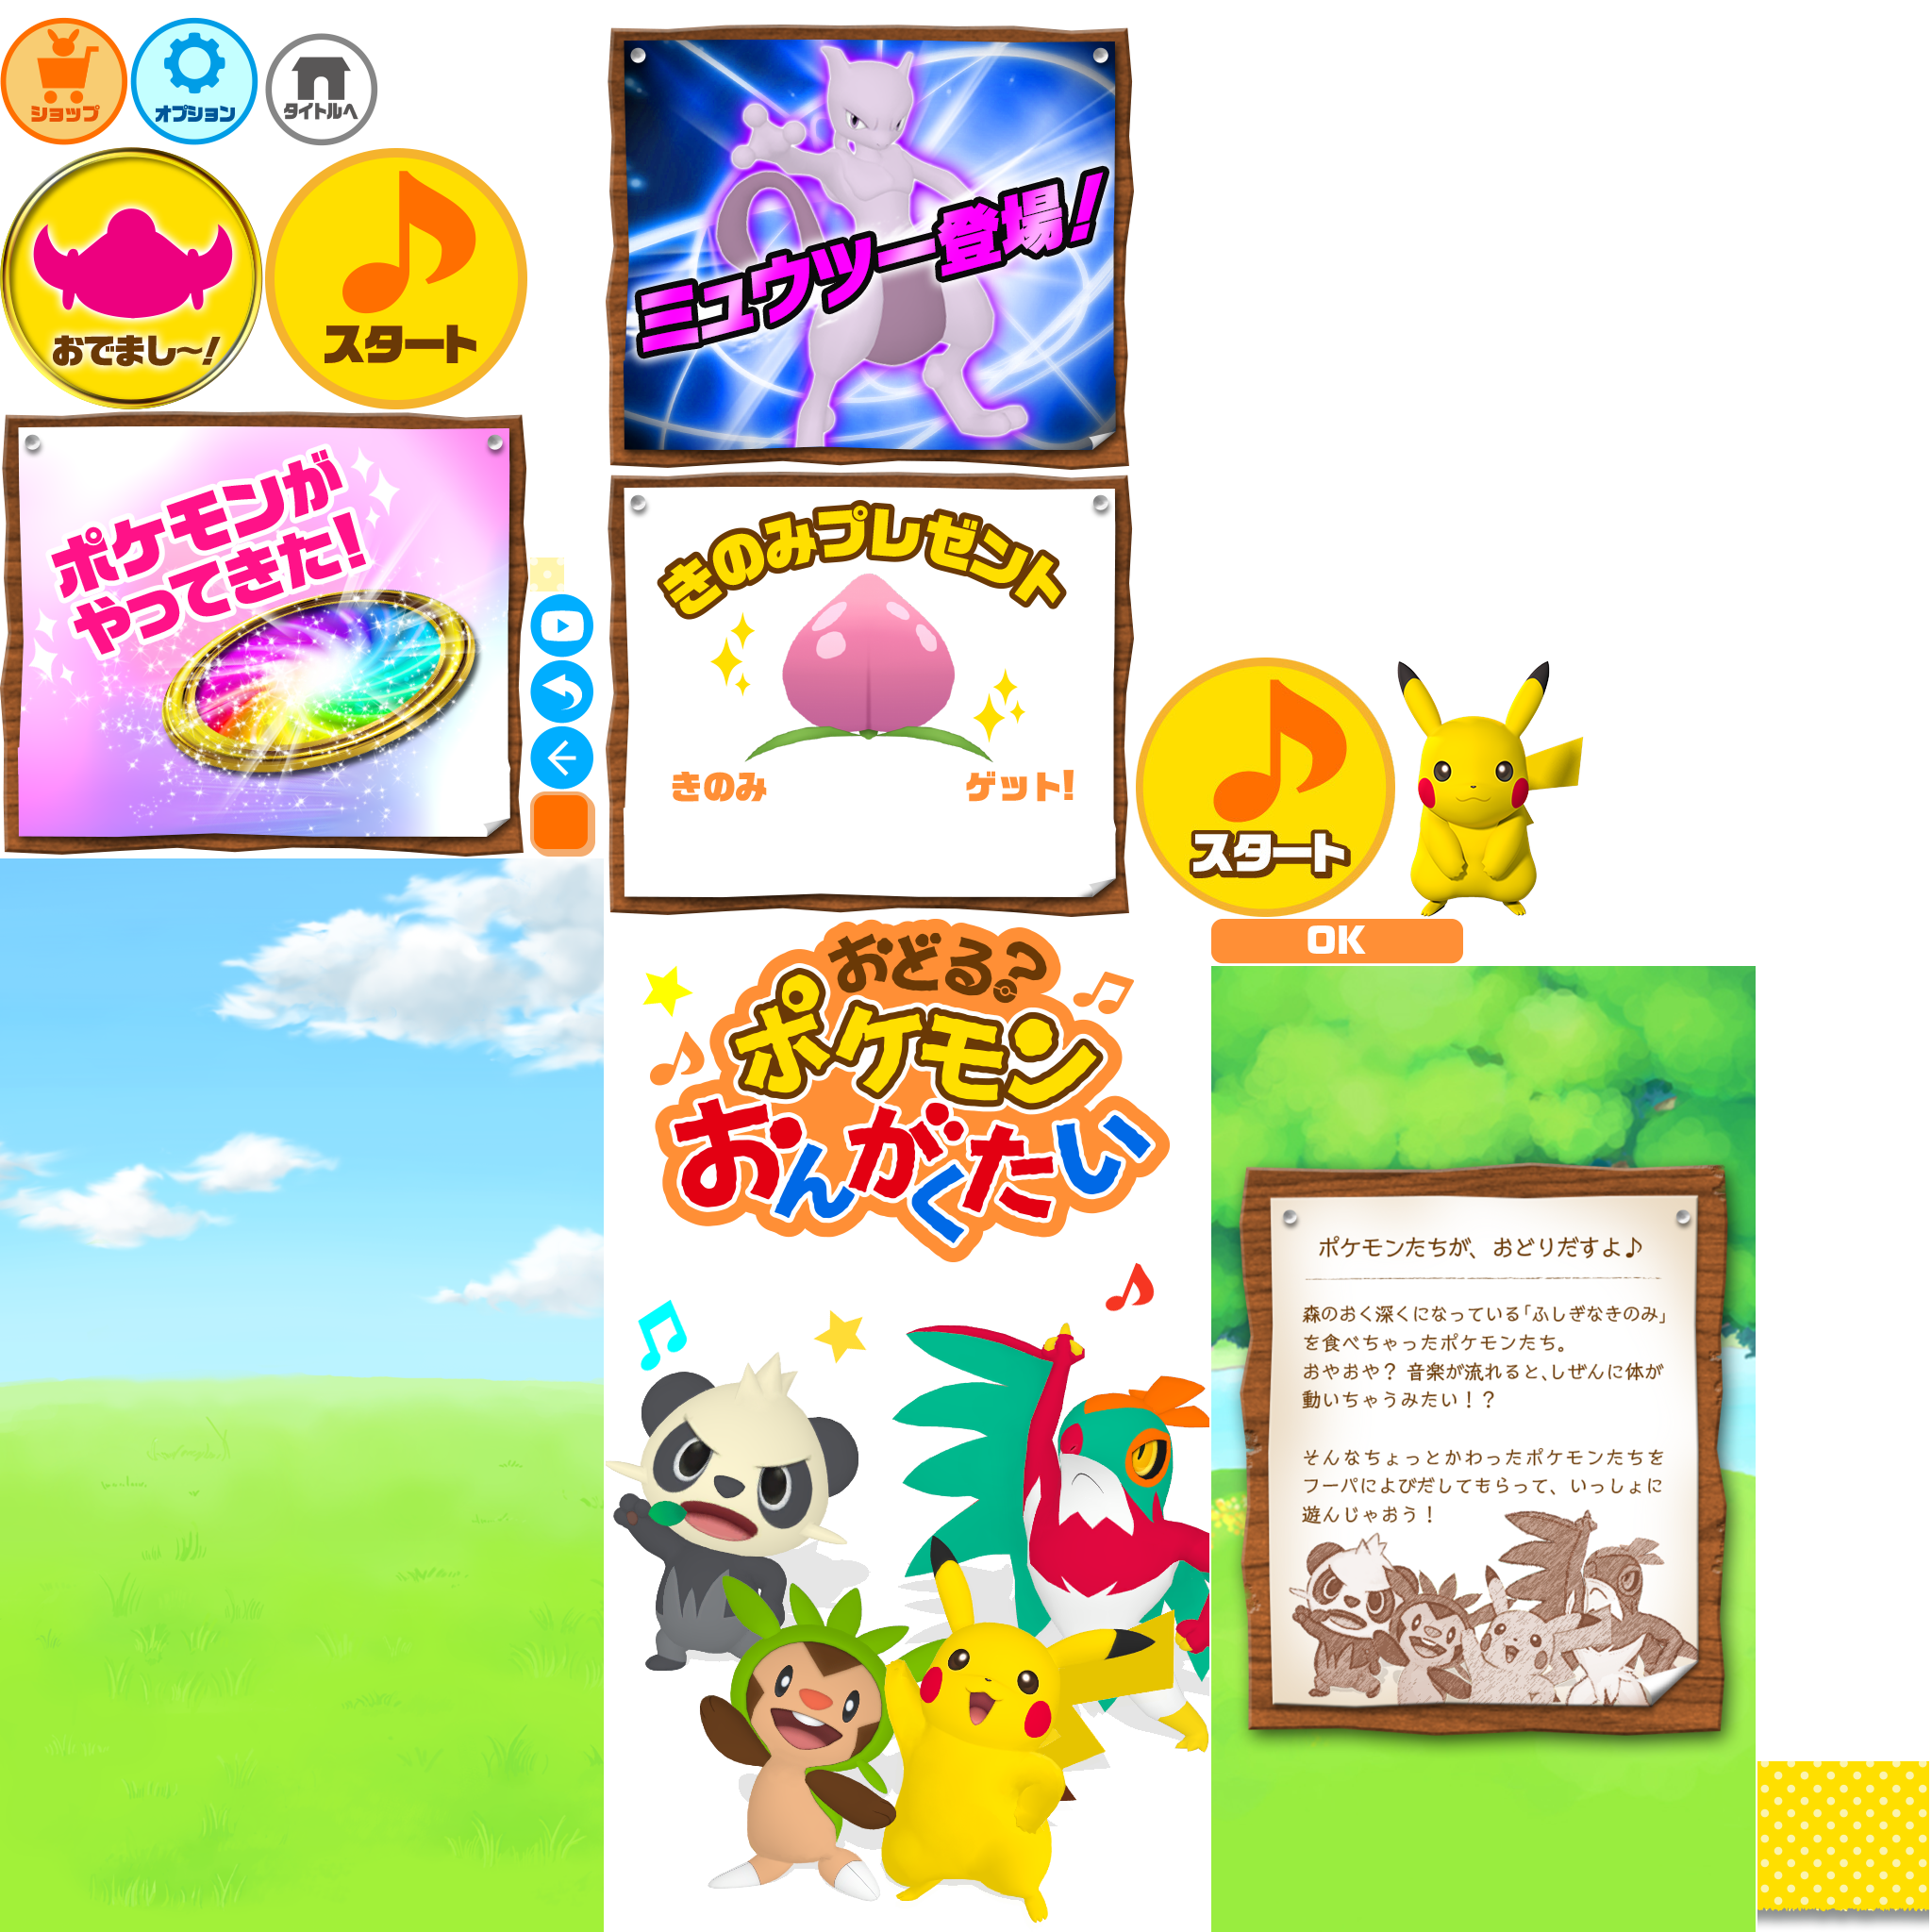 Dancing? Pokémon Band - Title Screen, Opening & Main Menu